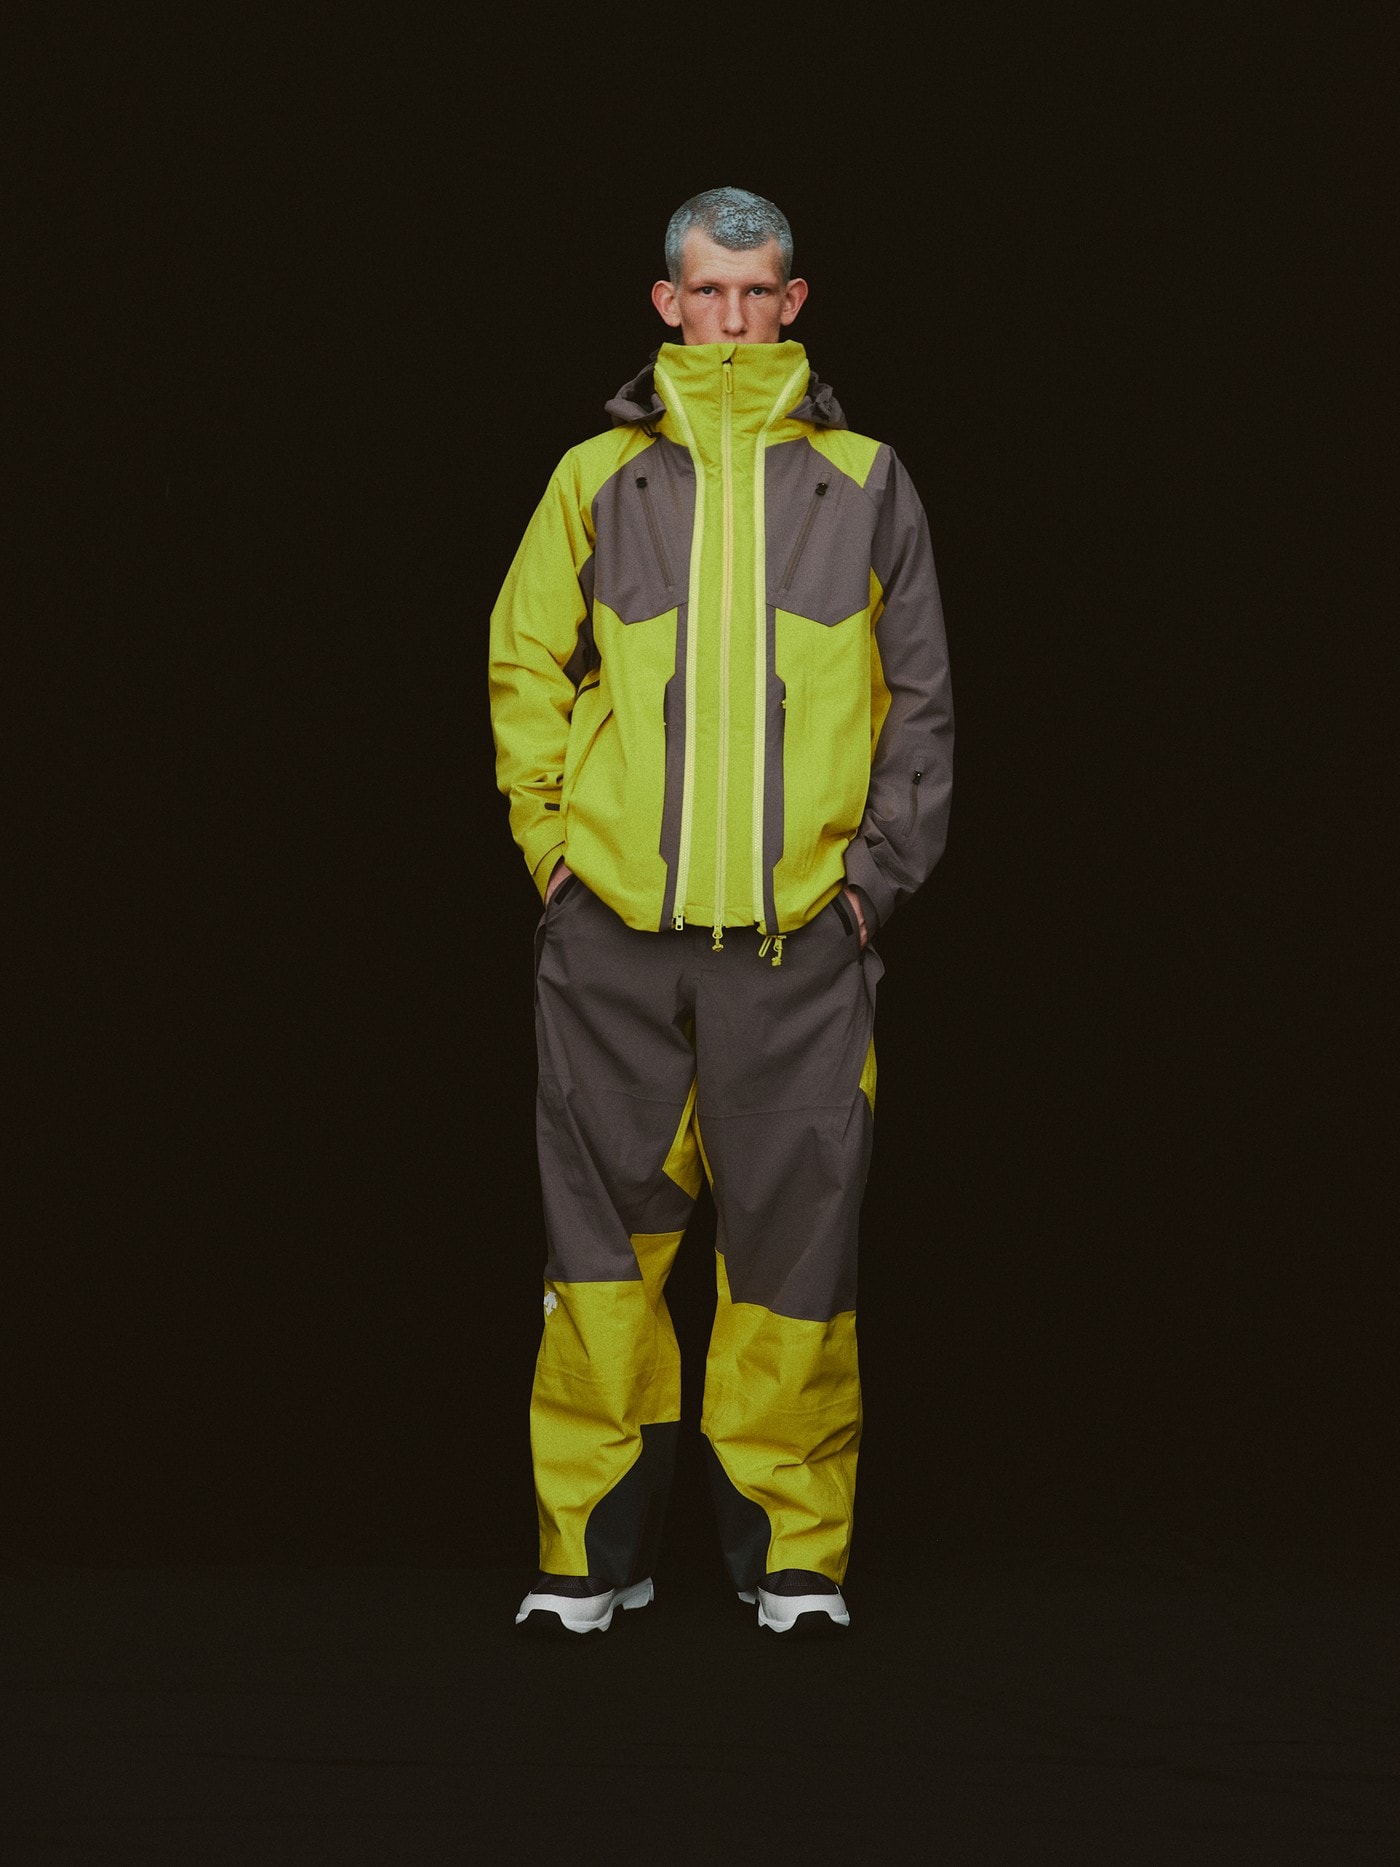 デサントと倉石一樹がコラボした最新スキーコレクションが発売 Descente Kazuki Kuraishi Ski Wear Collaboration